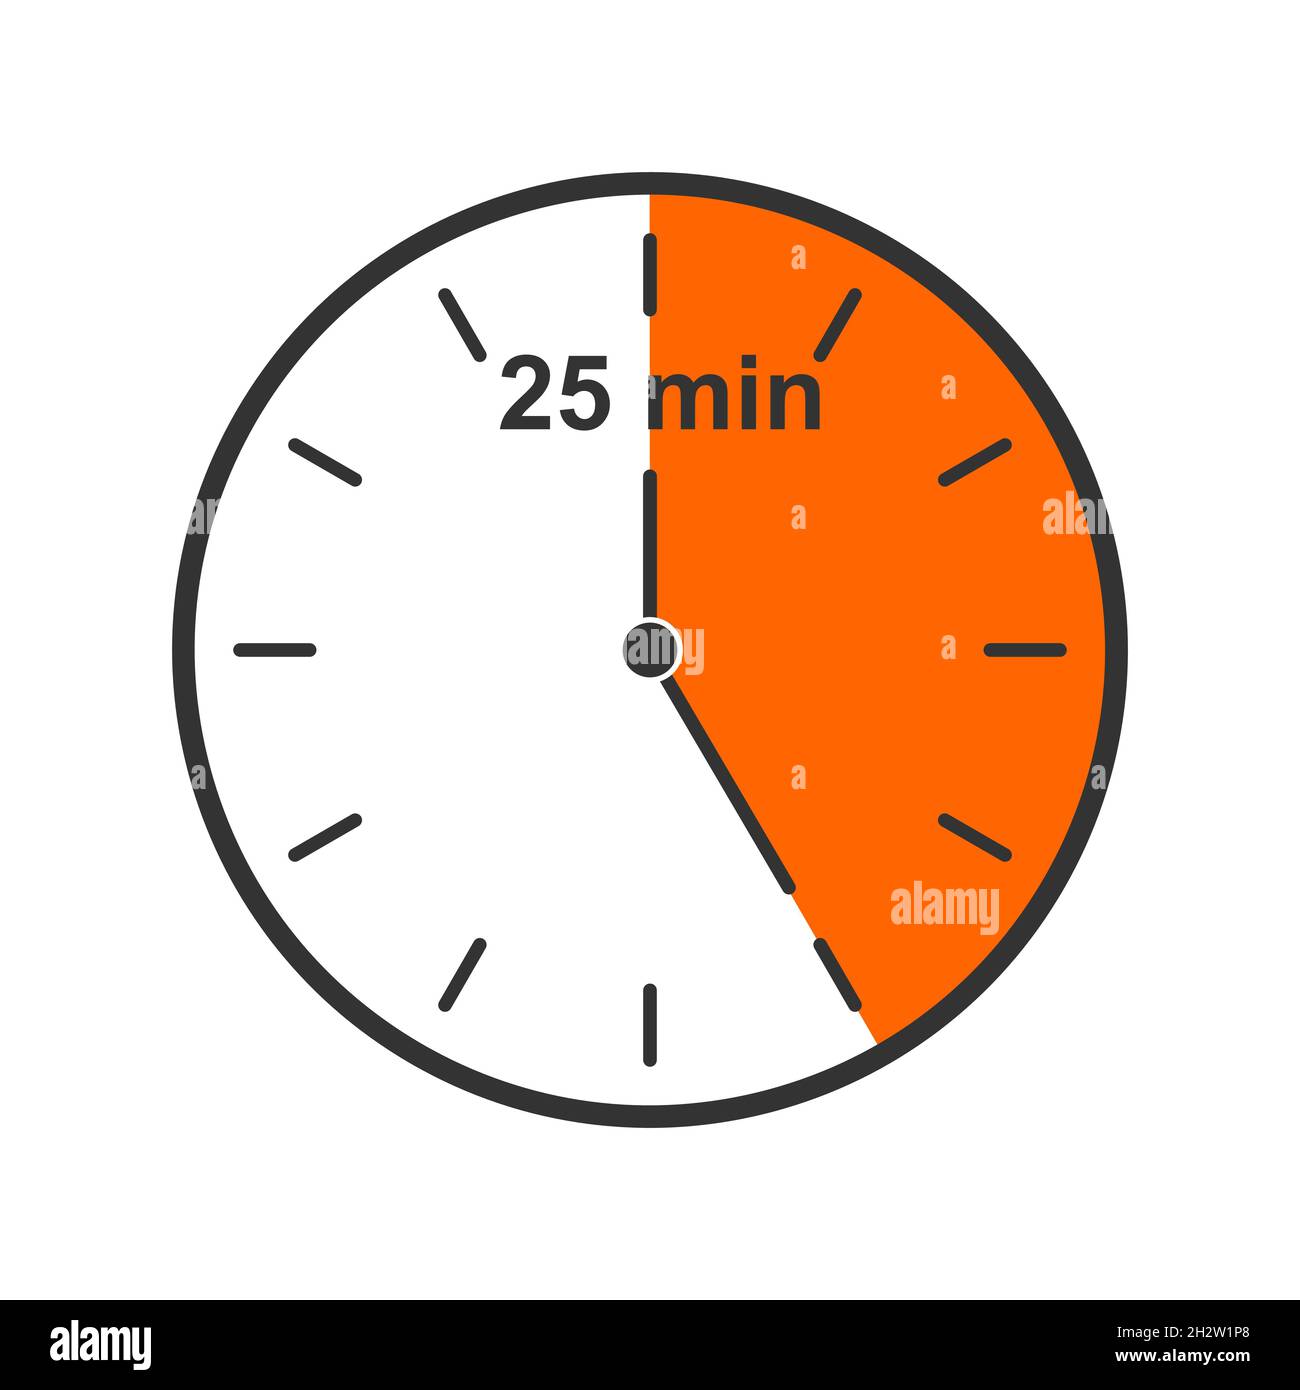 Uhrsymbol mit einem Zeitintervall von 25 Minuten. Countdown-Timer oder  Stoppuhrsymbol auf weißem Hintergrund isoliert. Infografik-Element für  Kochen oder Sportspiele. Vektorgrafik flach Stock-Vektorgrafik - Alamy